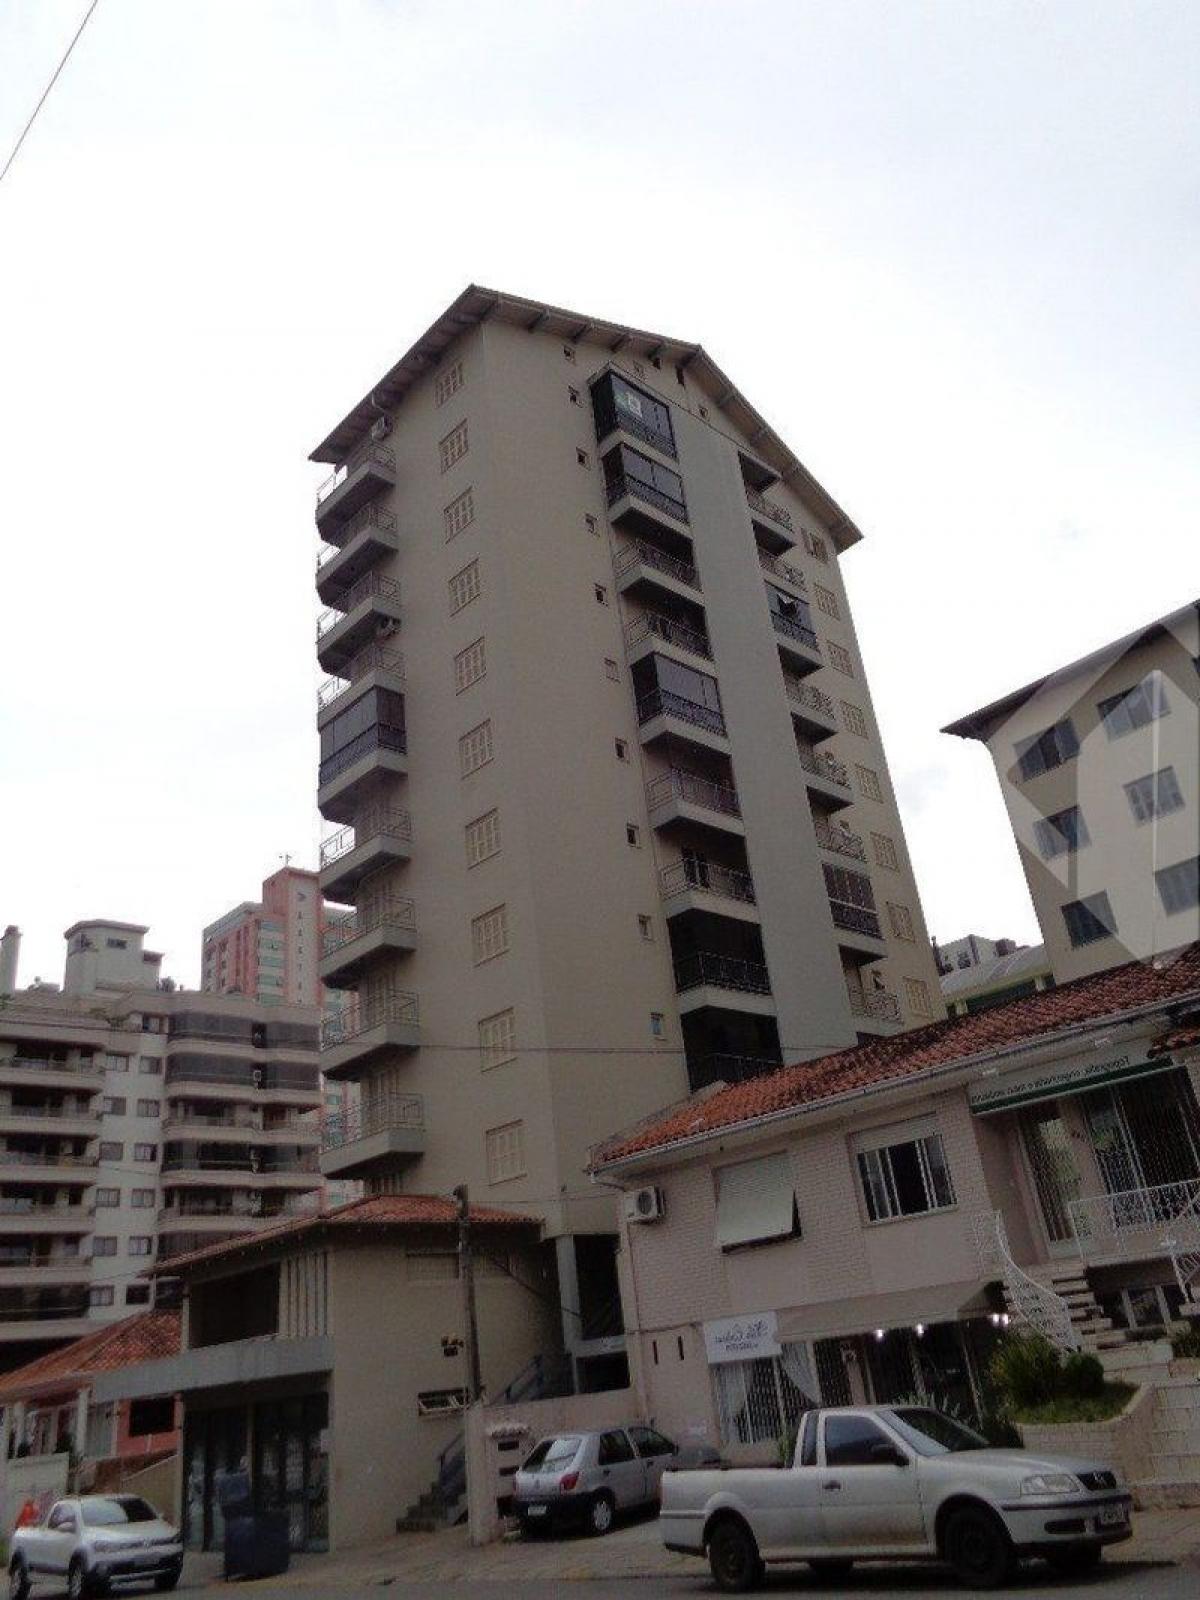 Picture of Apartment For Sale in Bento Gonçalves, Rio Grande do Sul, Brazil